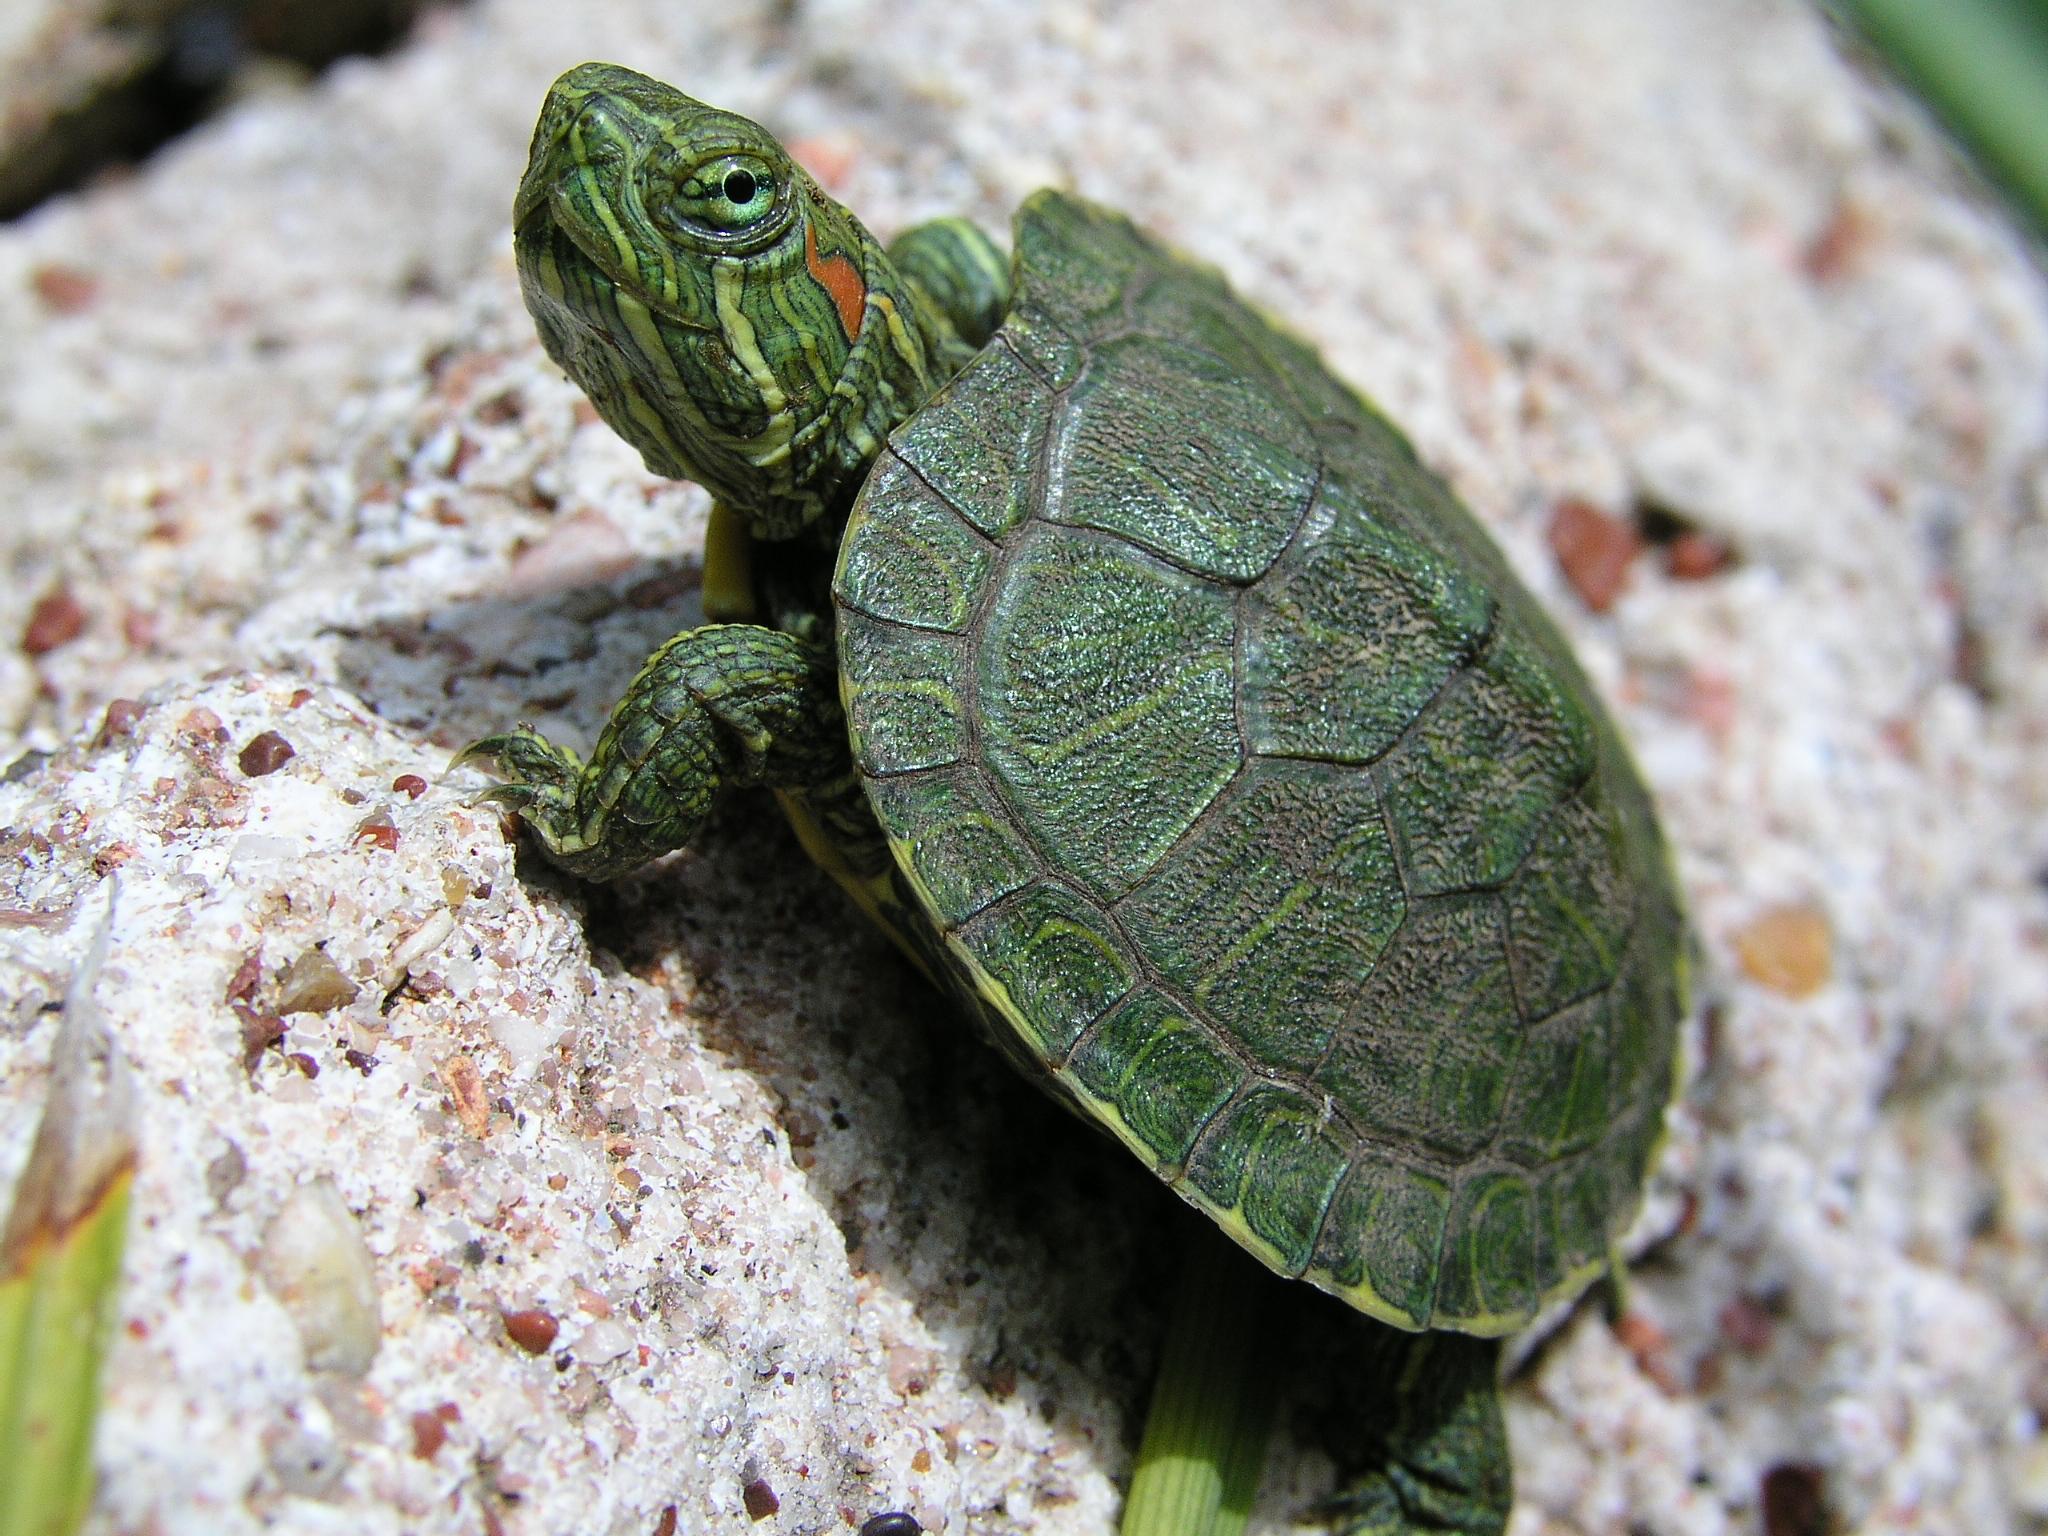 Free download wallpaper Turtles, Animal, Turtle on your PC desktop